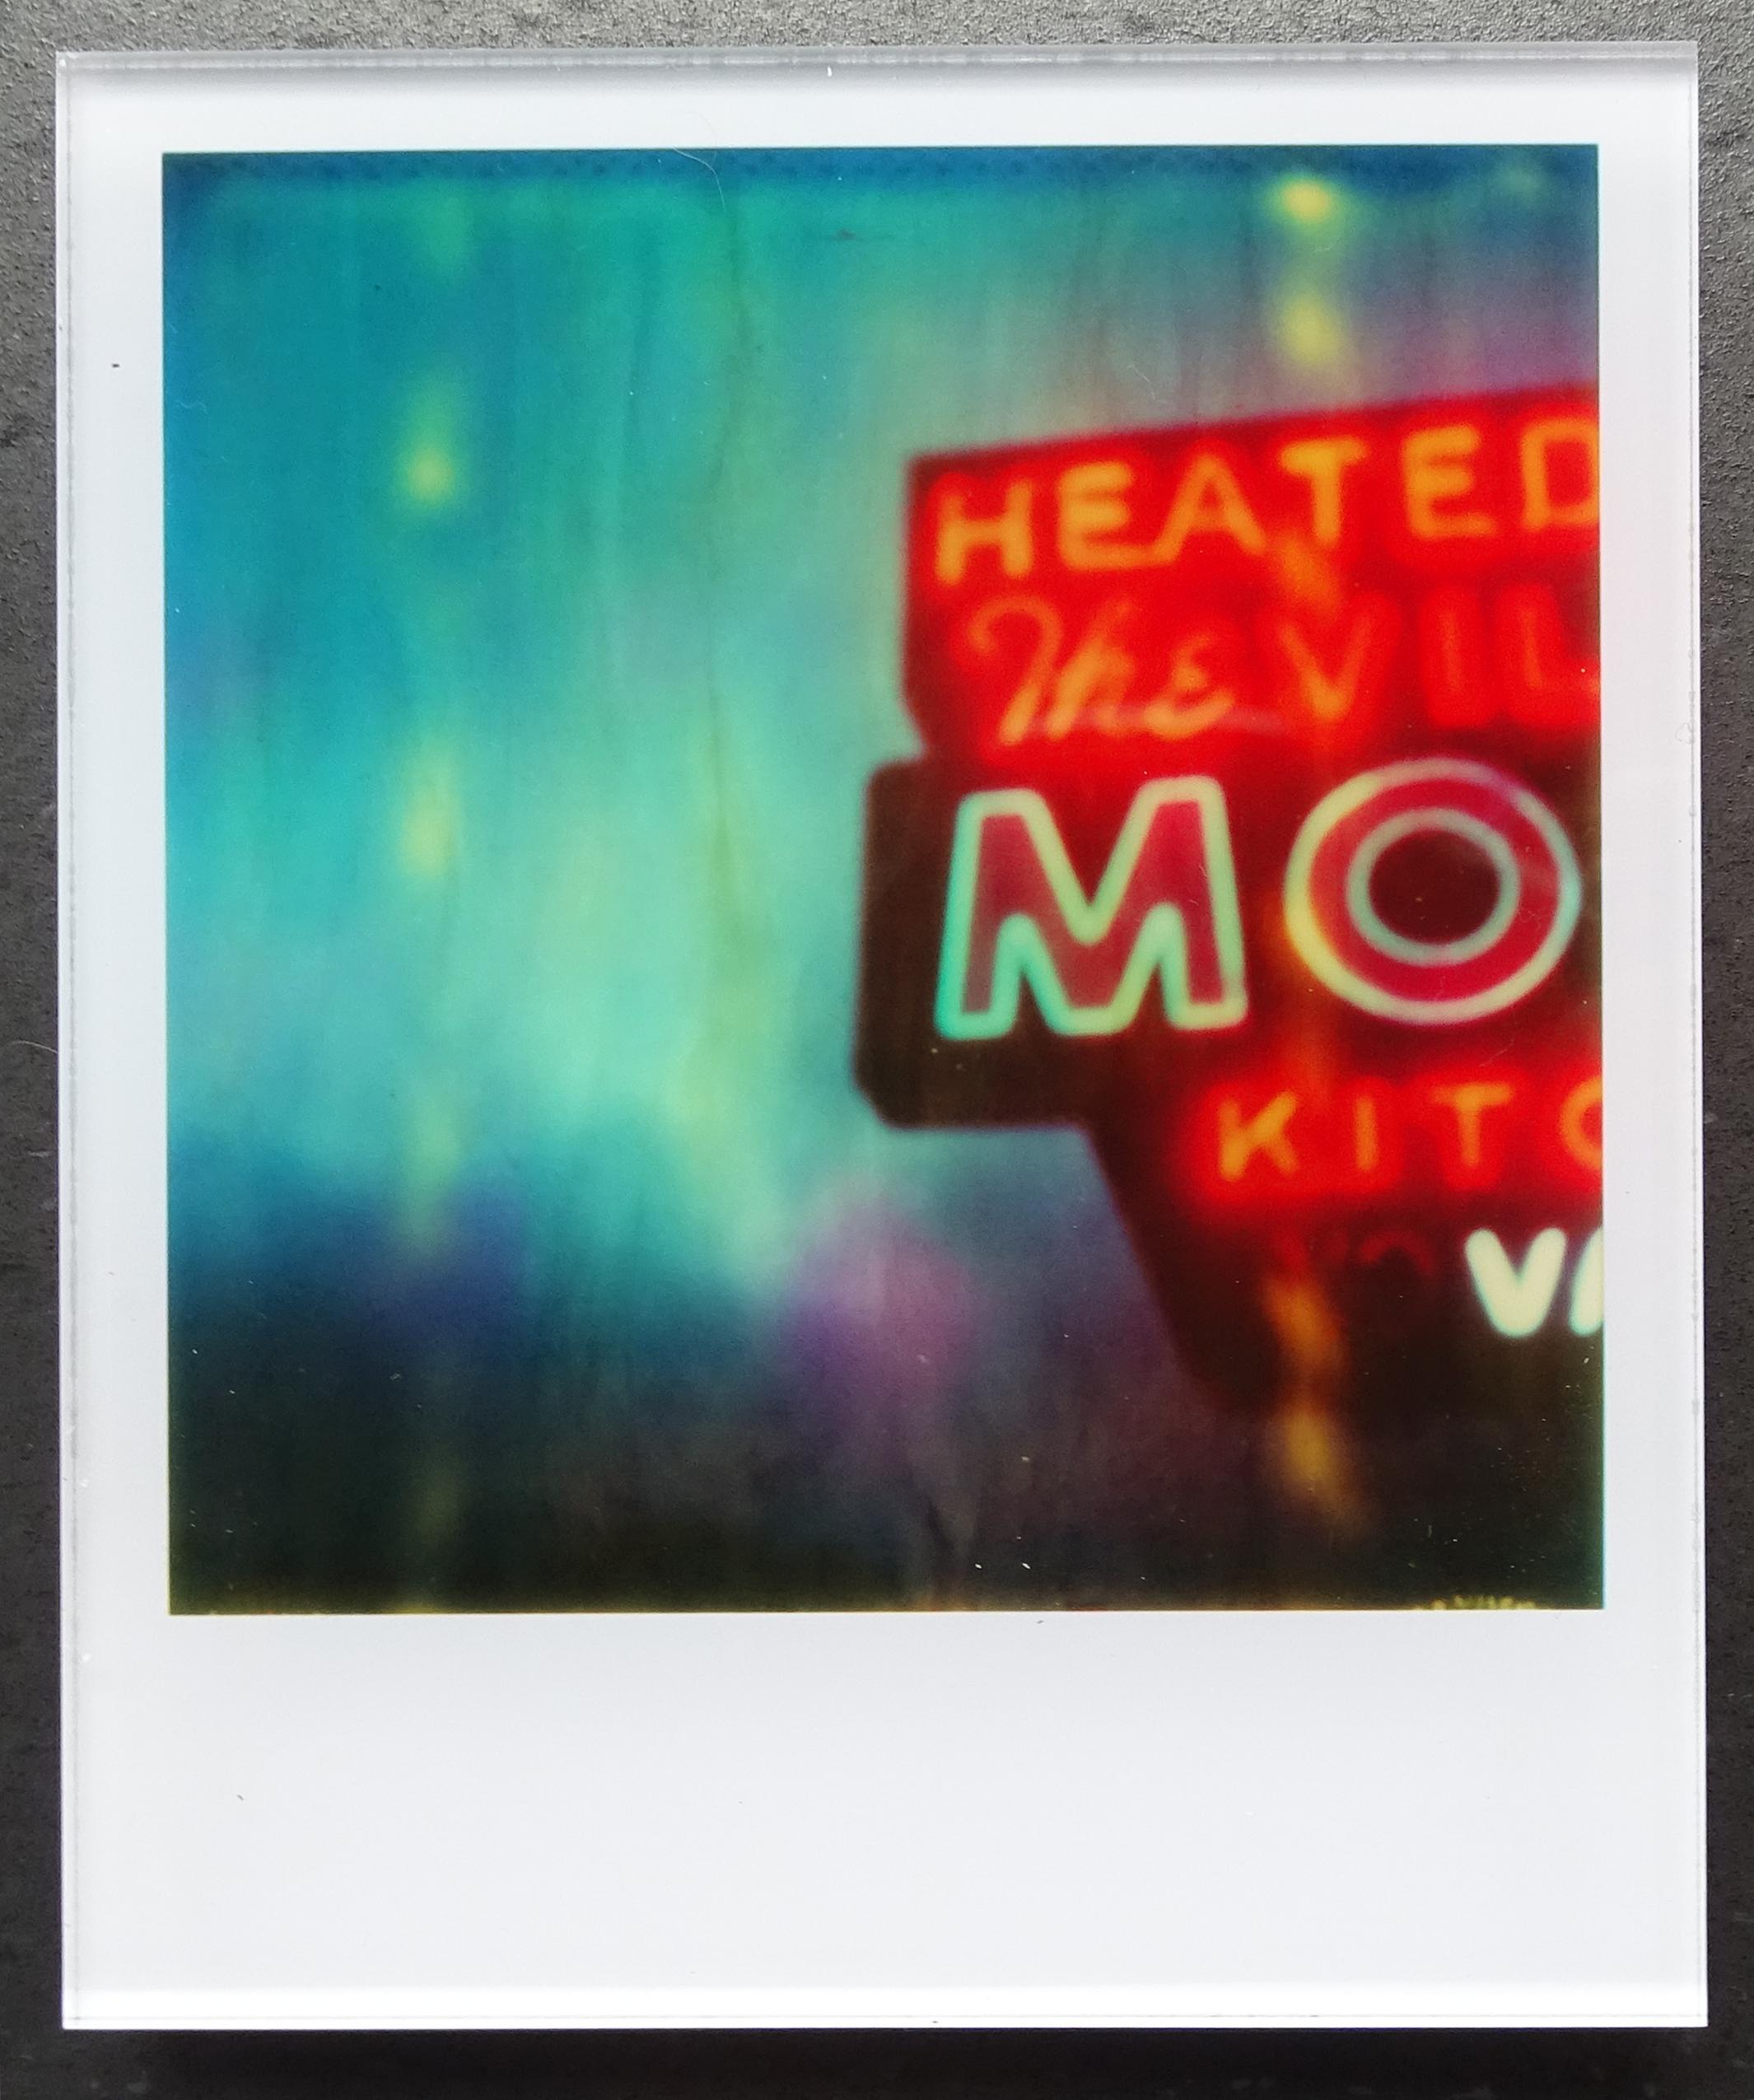 Stefanie Schneider Minis - Village Motel Blue - based on the Polaroid